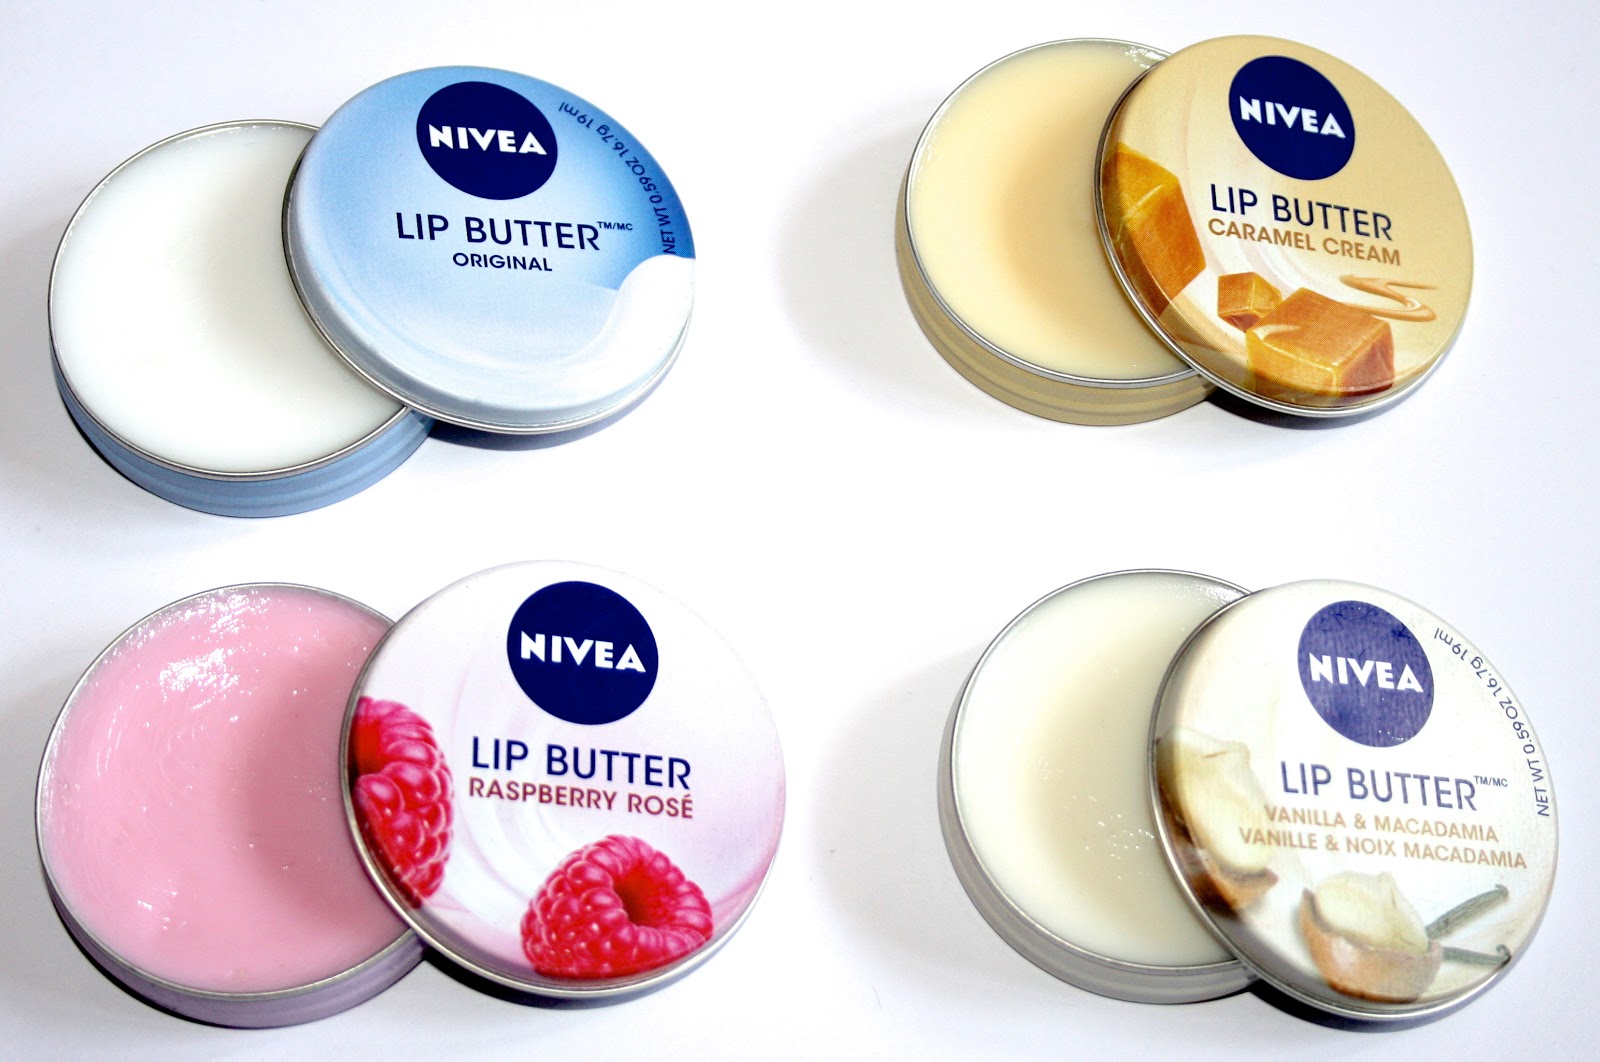 Son dưỡng Nivea Lip Butter có 4 loại hương